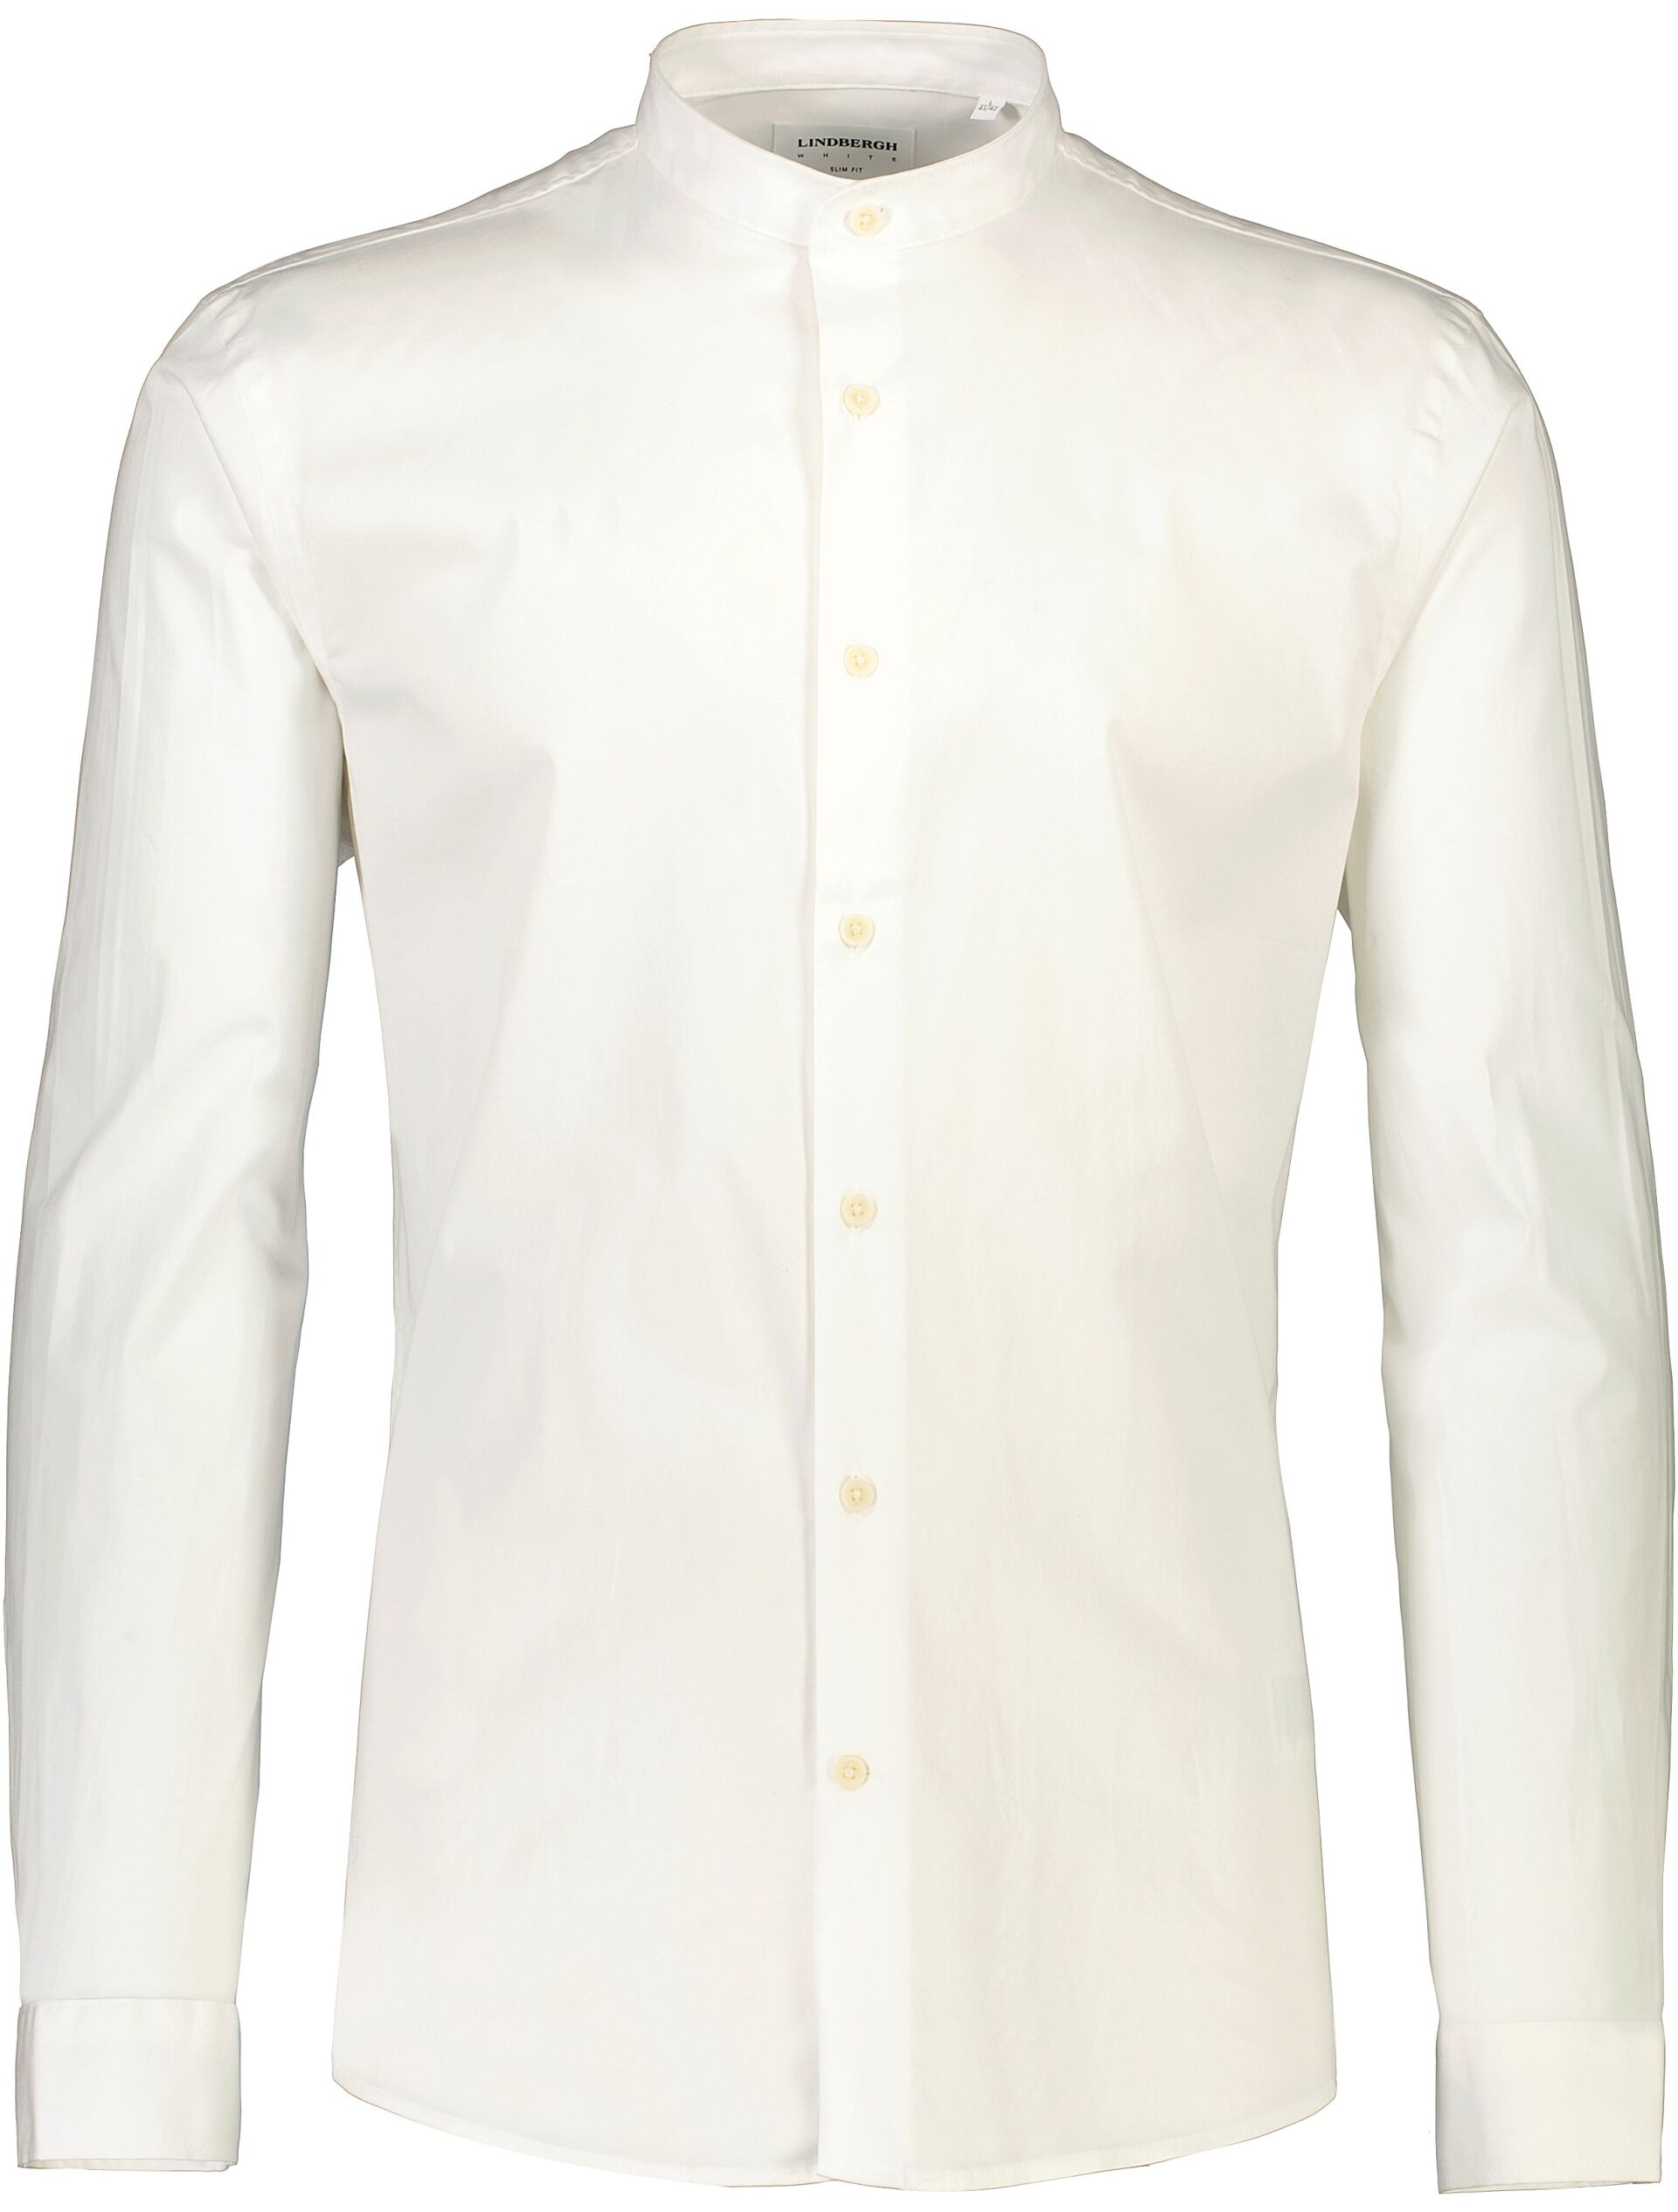 Business casual shirt Business casual shirt White 30-203582